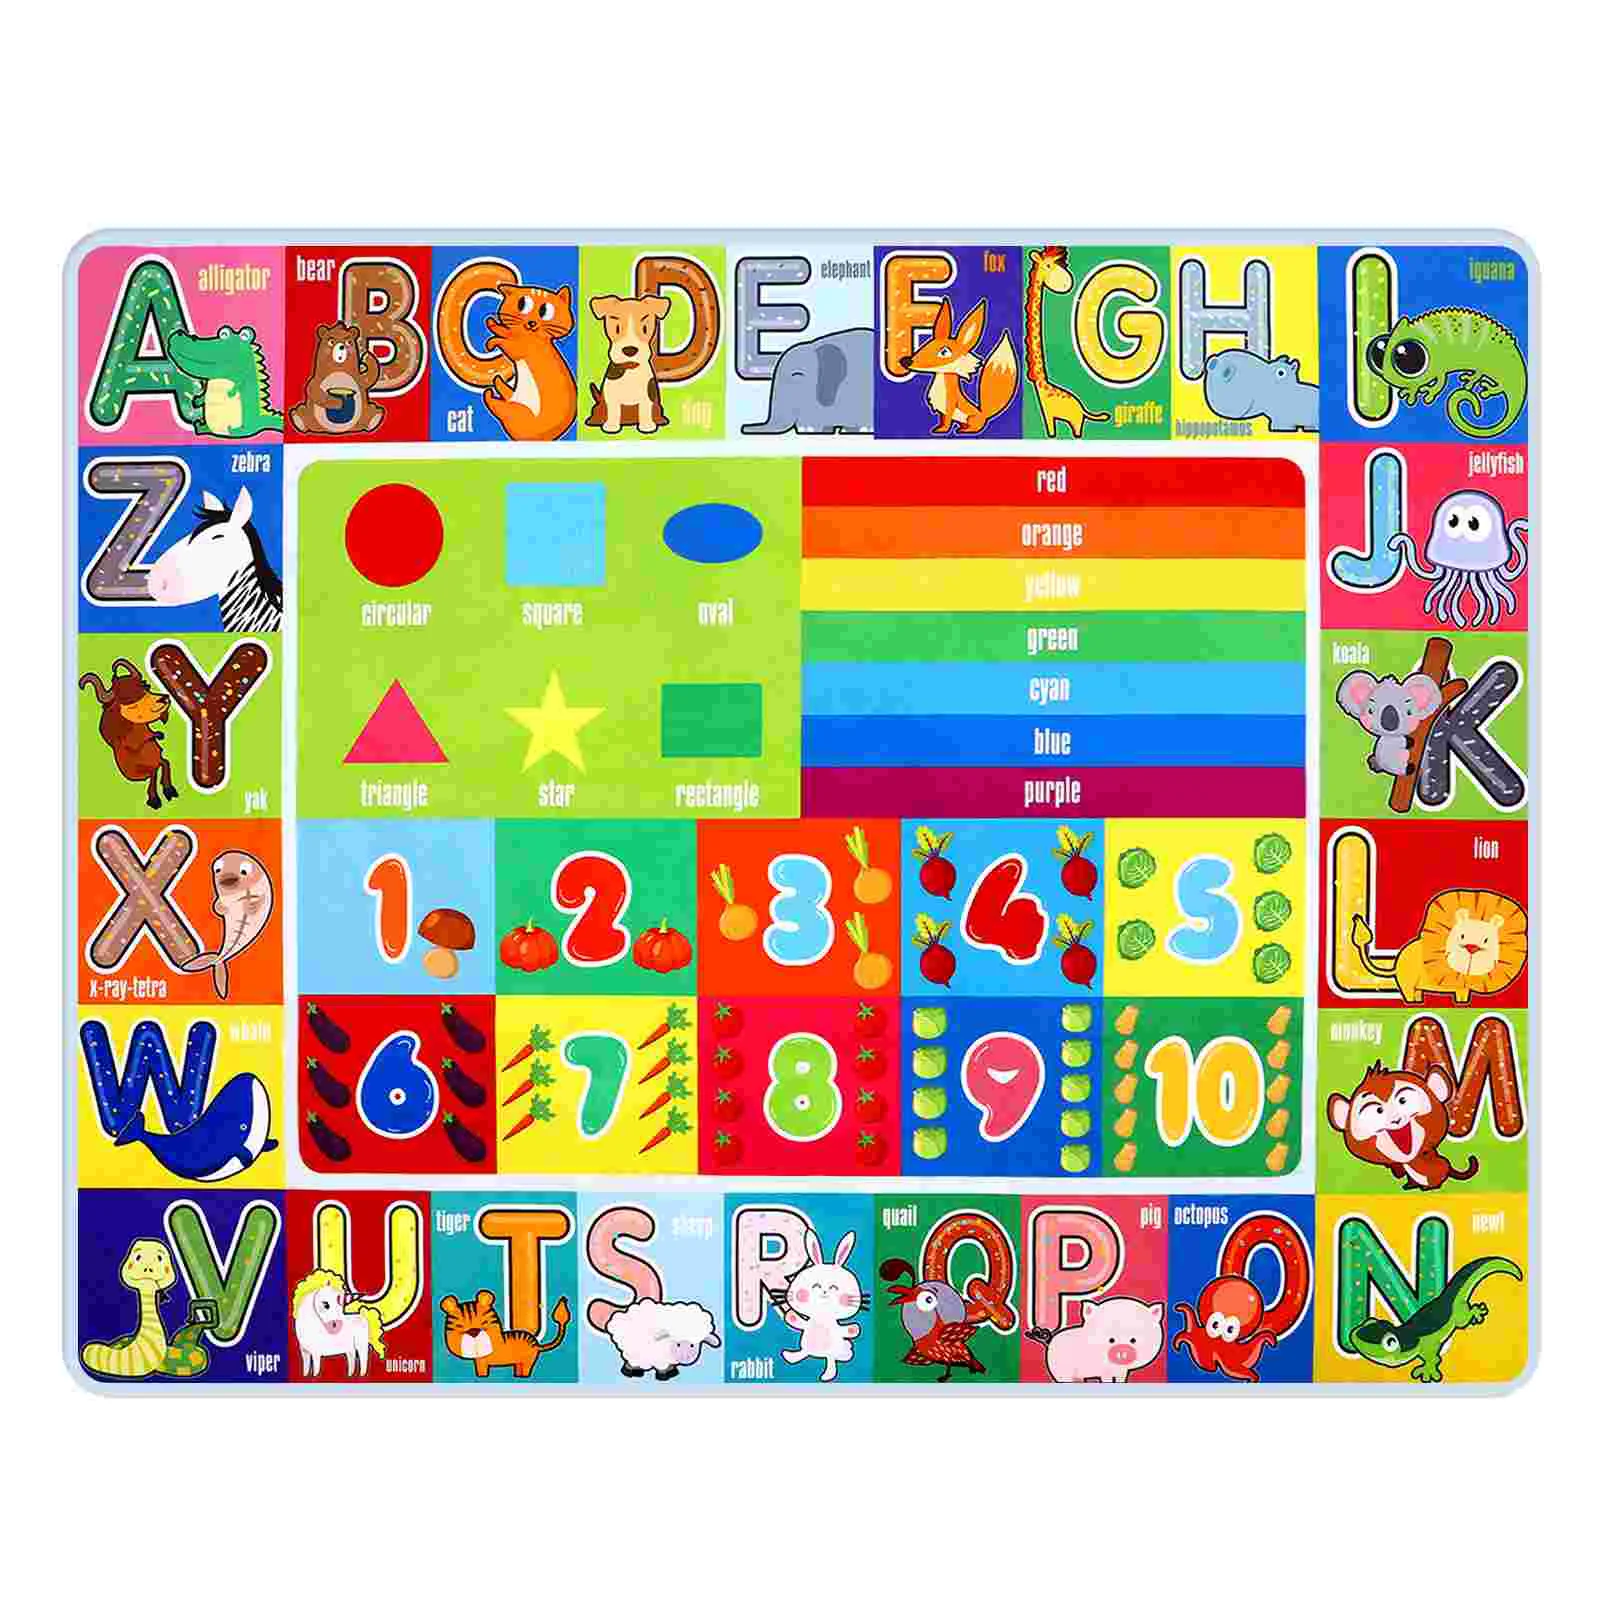 

Игровой коврик ABC, цифры и формы, развивающая площадь, детский игровой коврик для малышей, обучающий коврик для классной комнаты, 55x43 дюймов